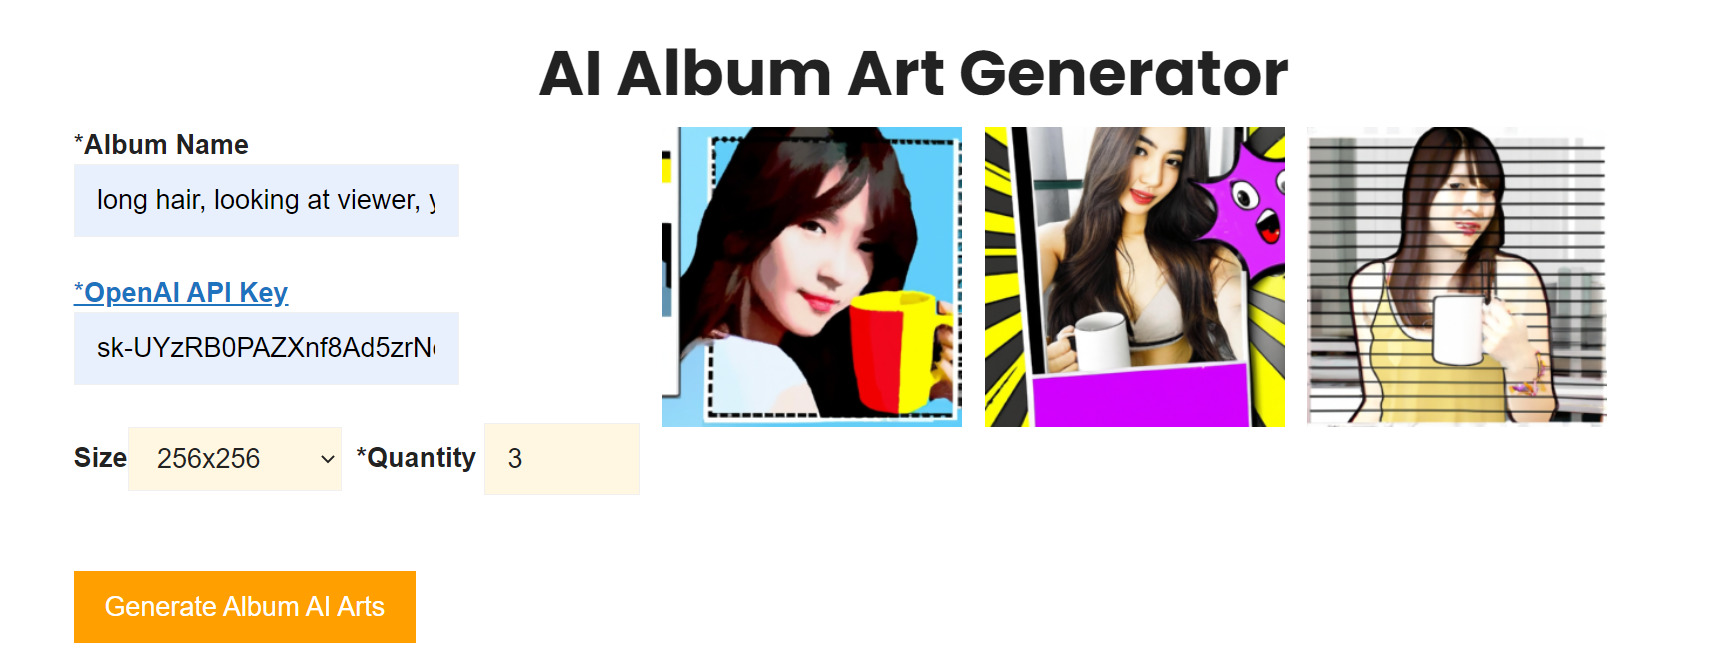 AI Album Art Generator